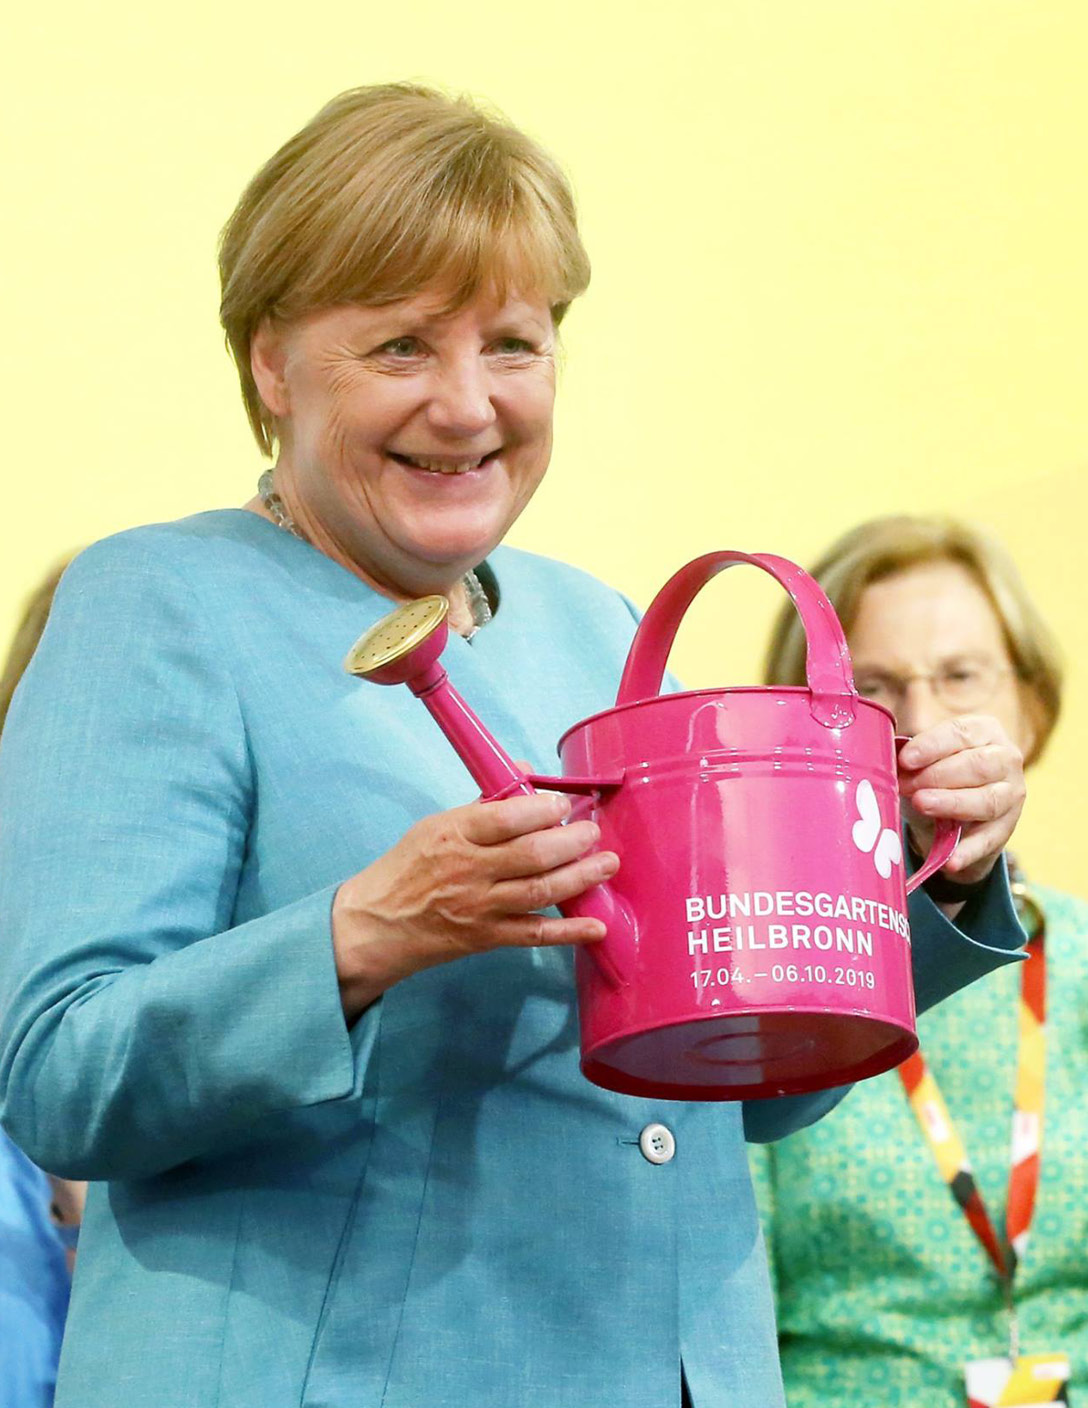 Angela Merkel auf der Bundesgartenschau mit BUGA Gießkanne